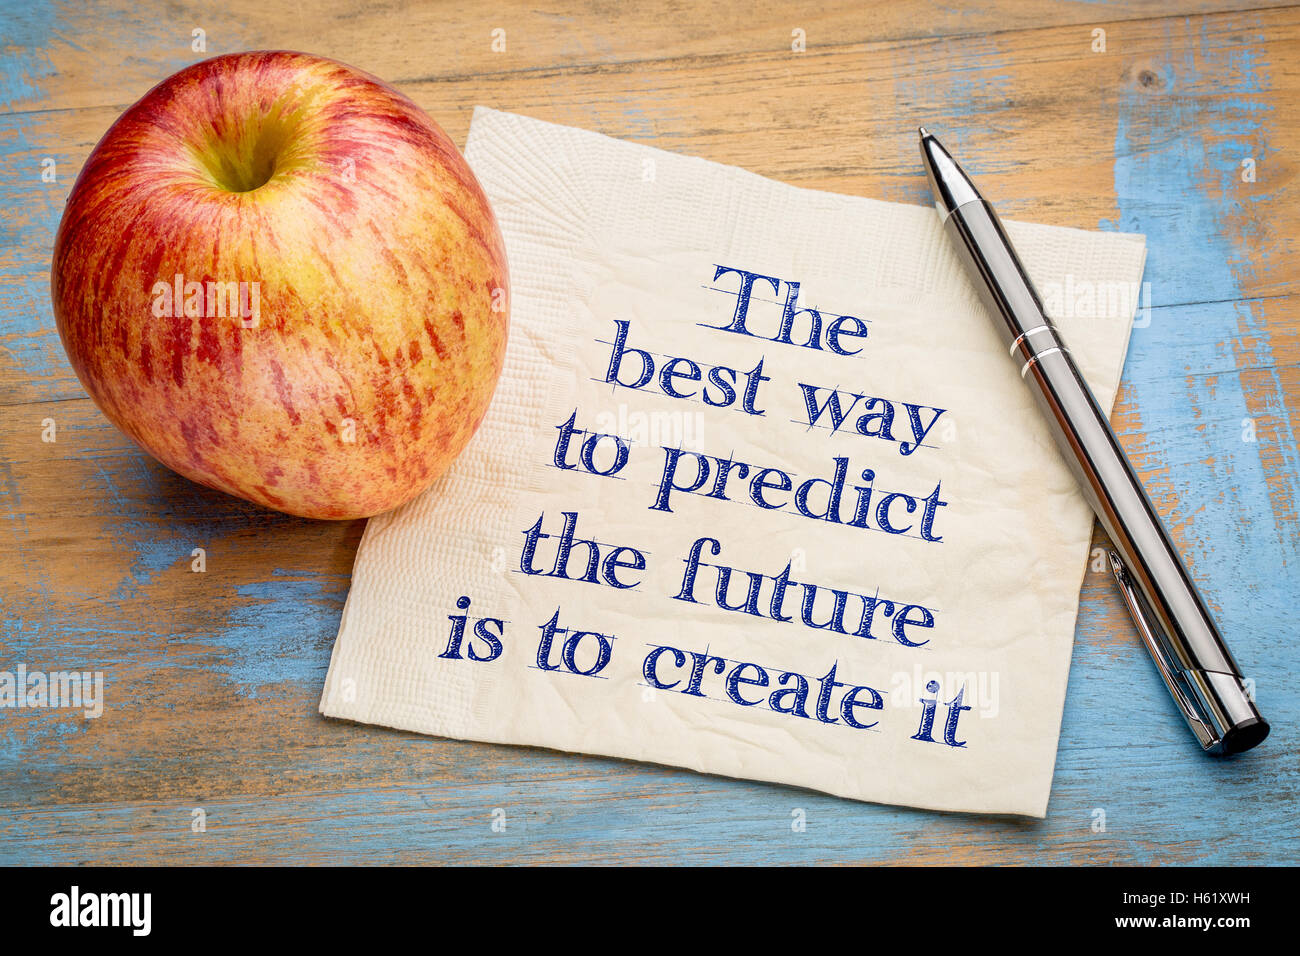 La meilleure façon de prédire le futur est de le créer - écriture sur une serviette avec une pomme fraîche Banque D'Images